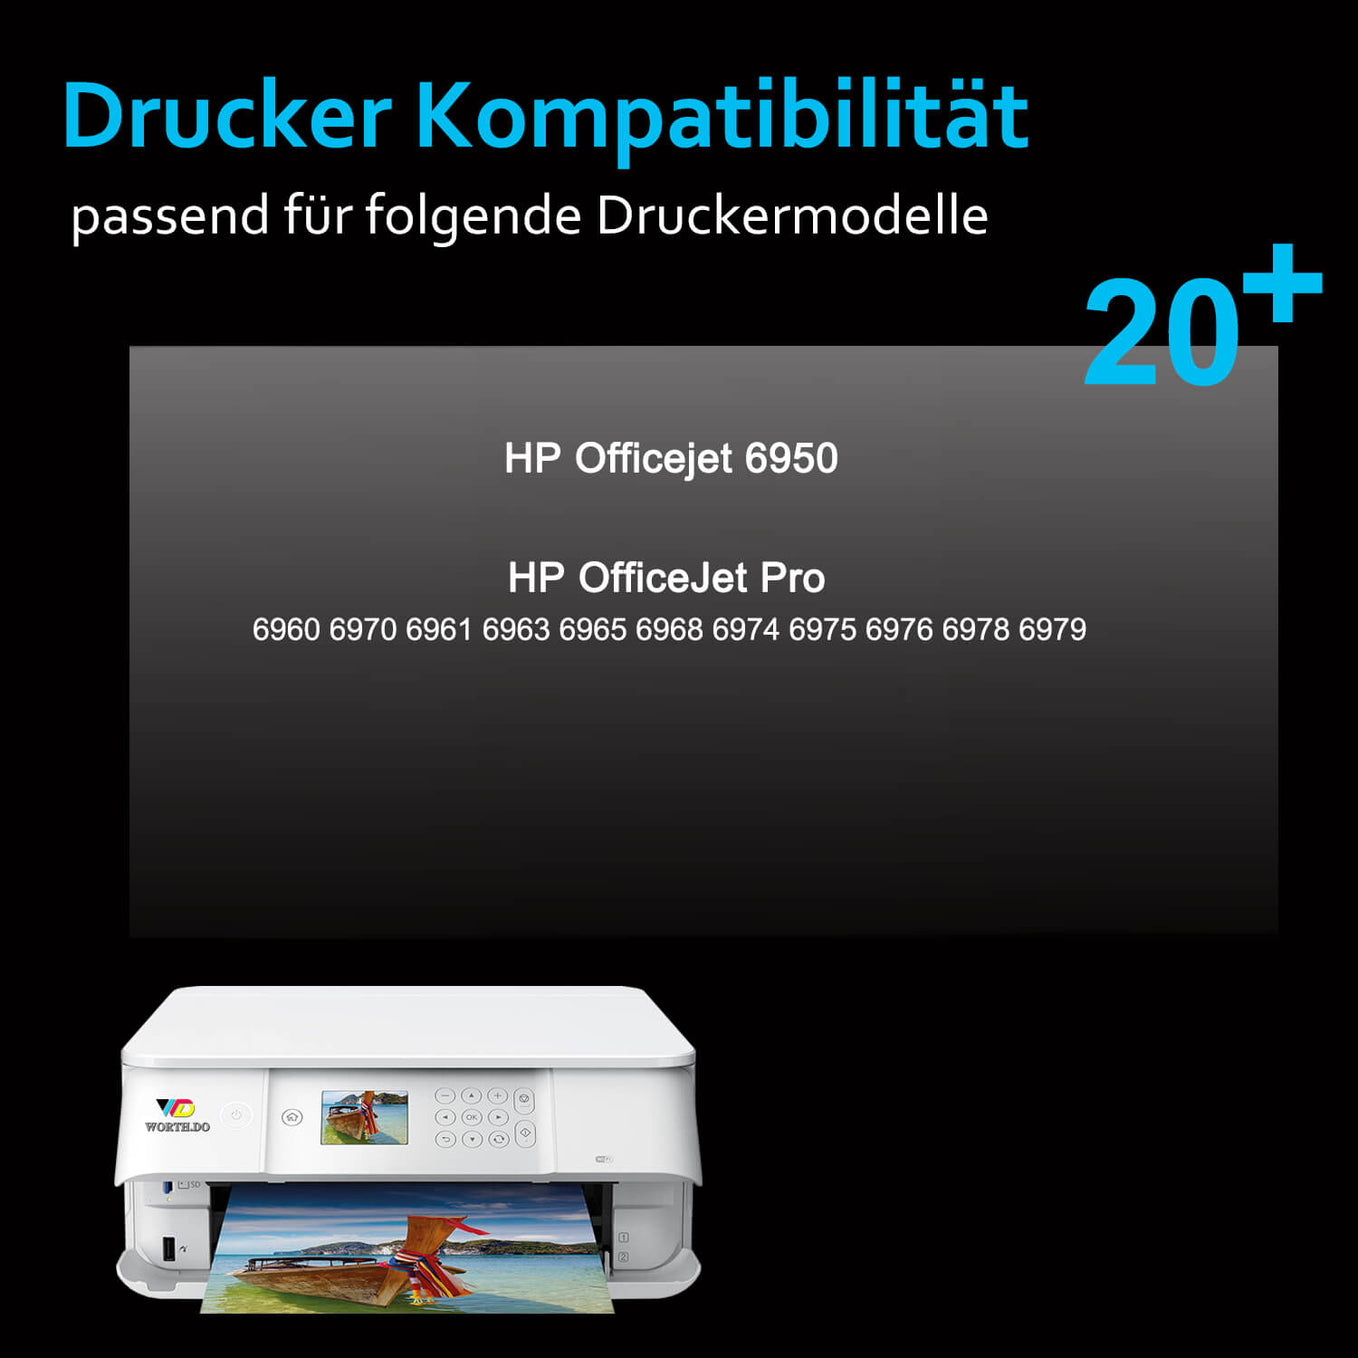       hp-903xl-tintenpatronen-drucker-kompatibilitaet-worthdo